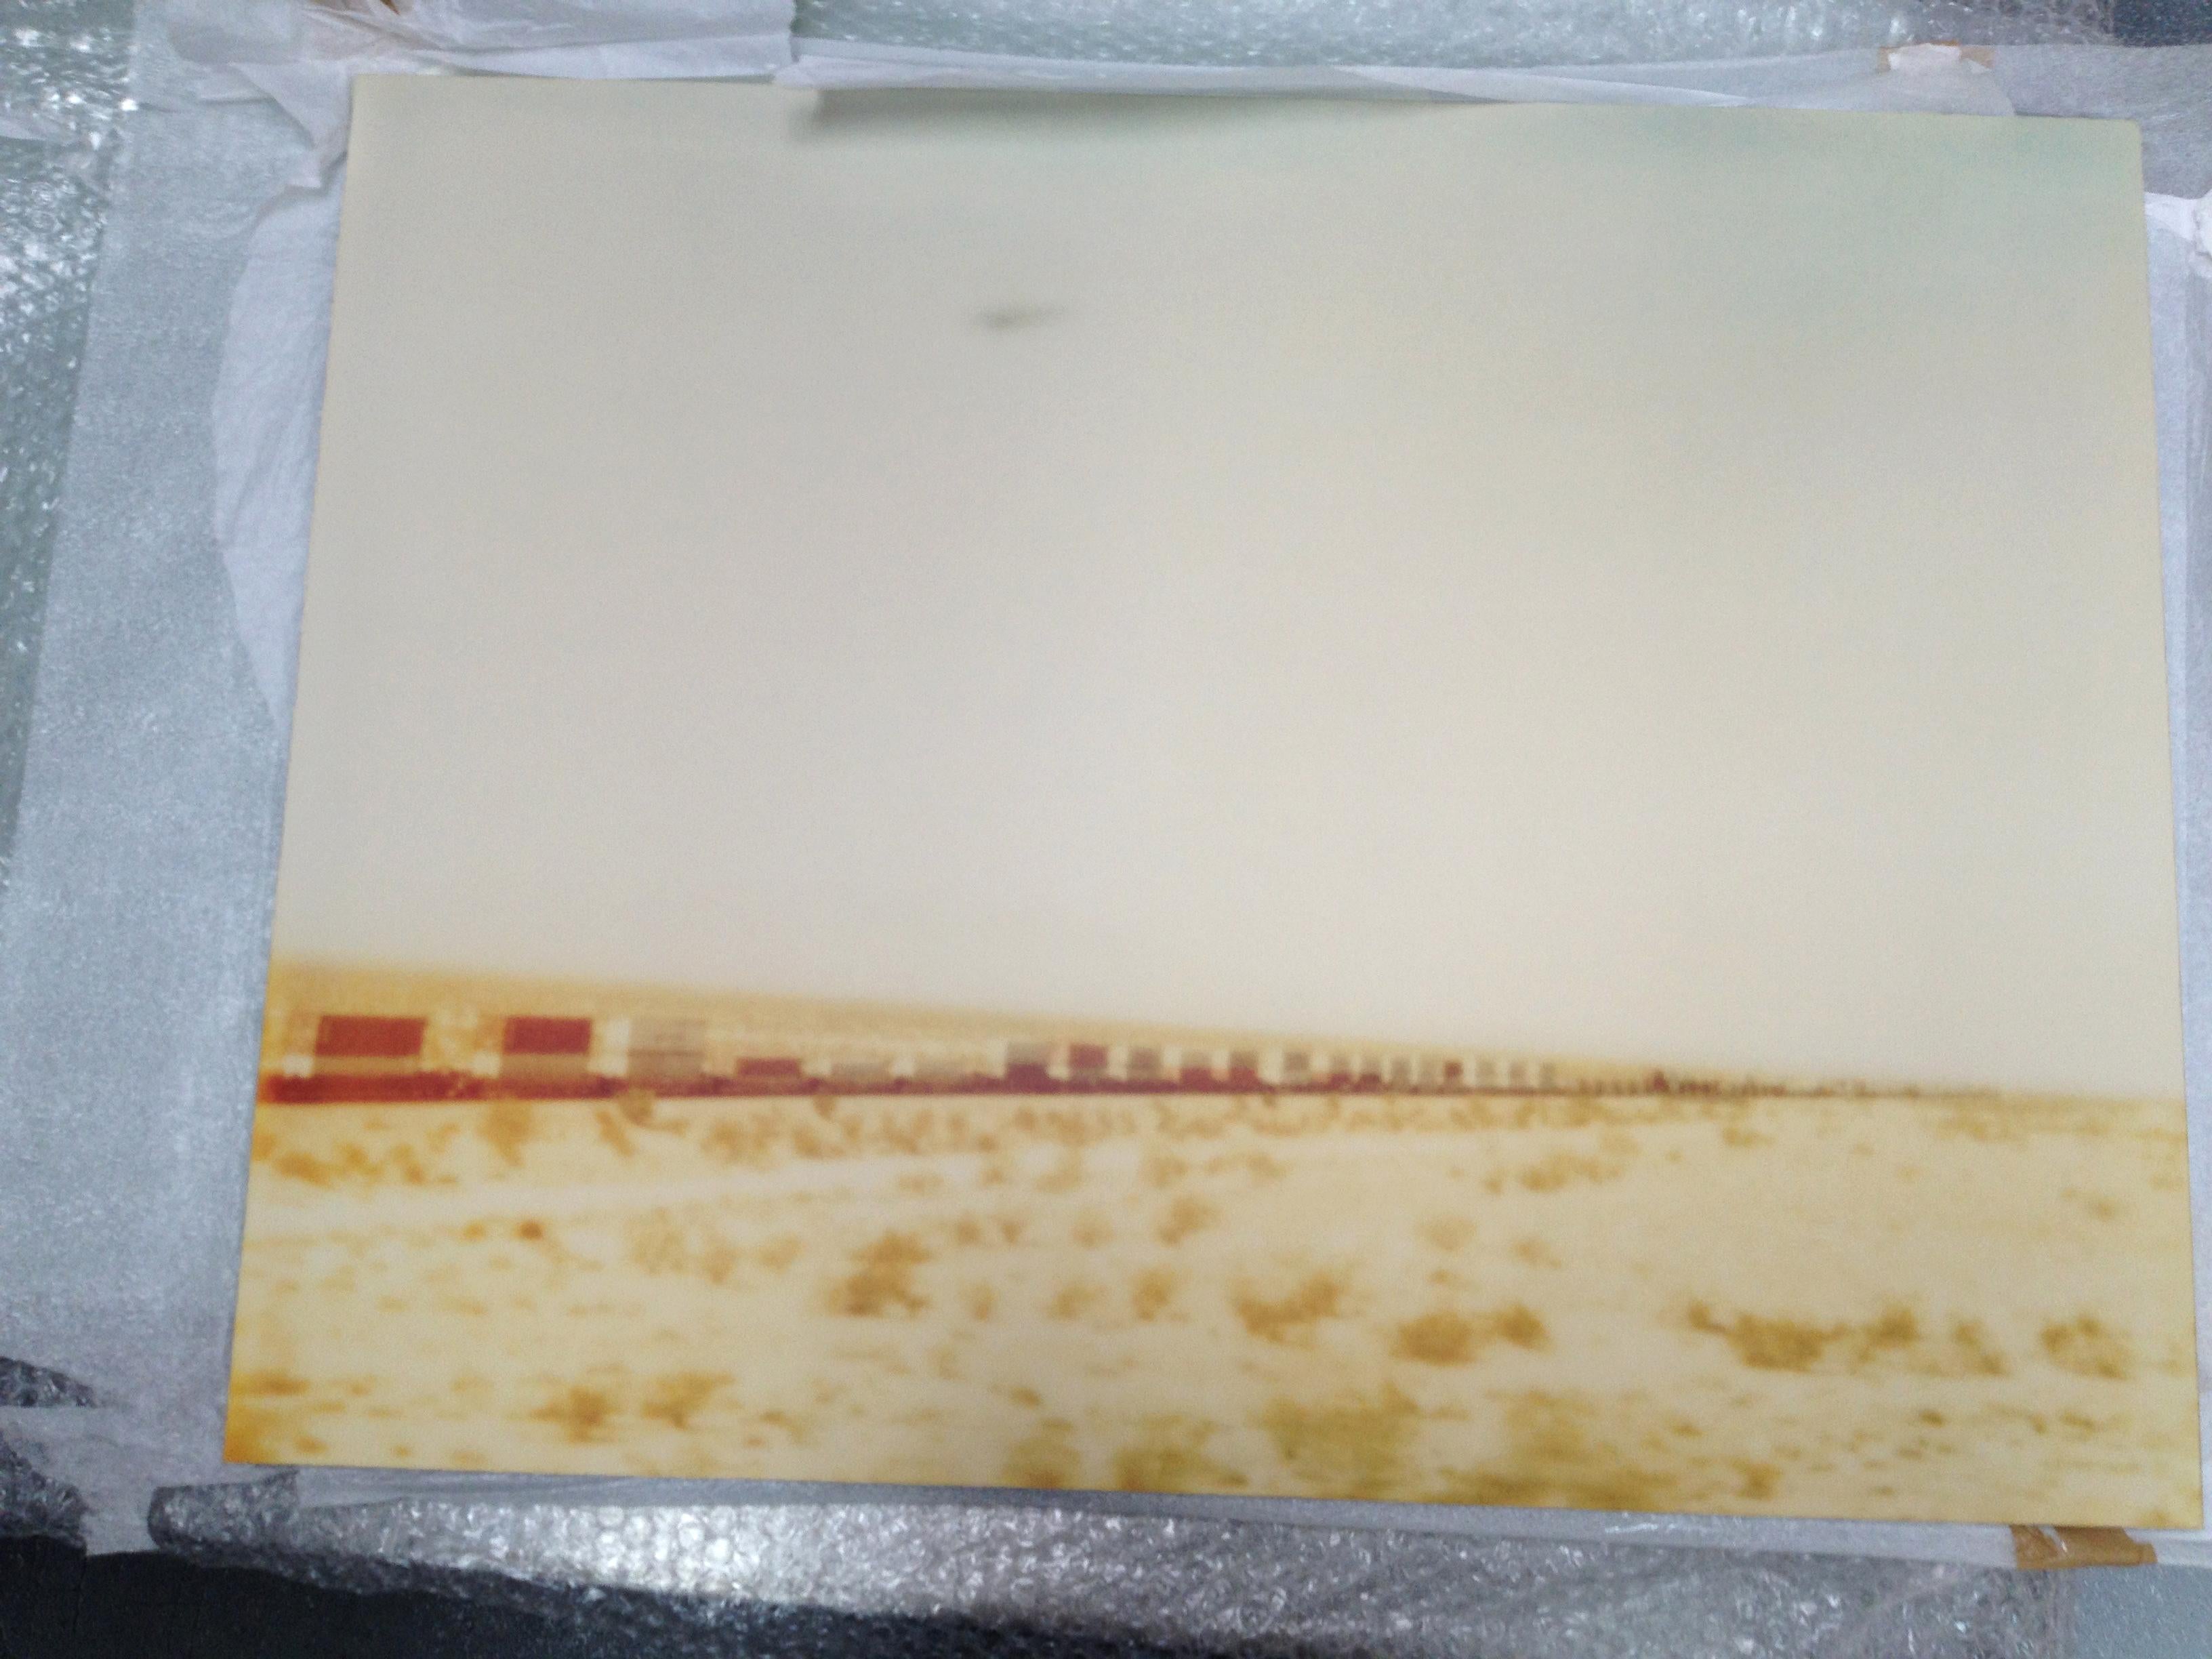 Train crosses Plain (Wastelands) - analoger Handdruck, montiert - Polaroid, Farbe – Photograph von Stefanie Schneider